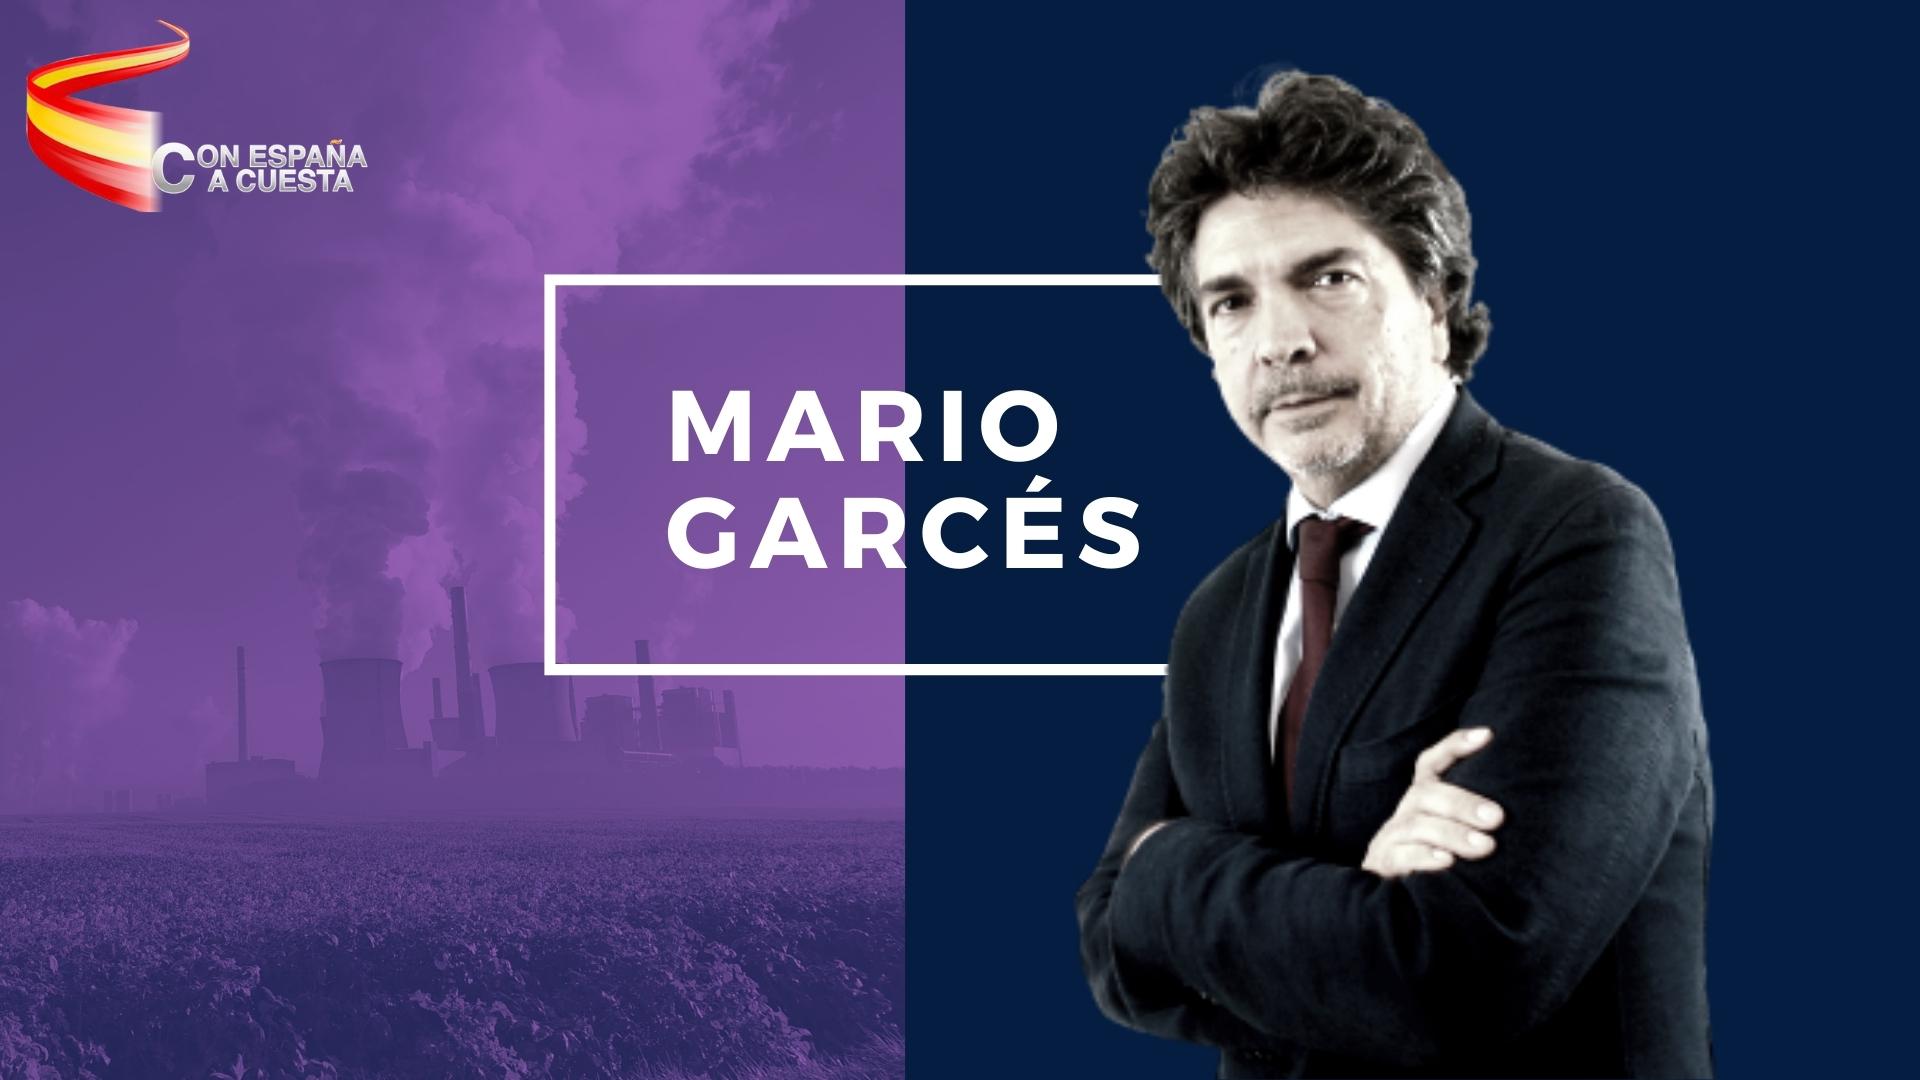 MARIO GARCES